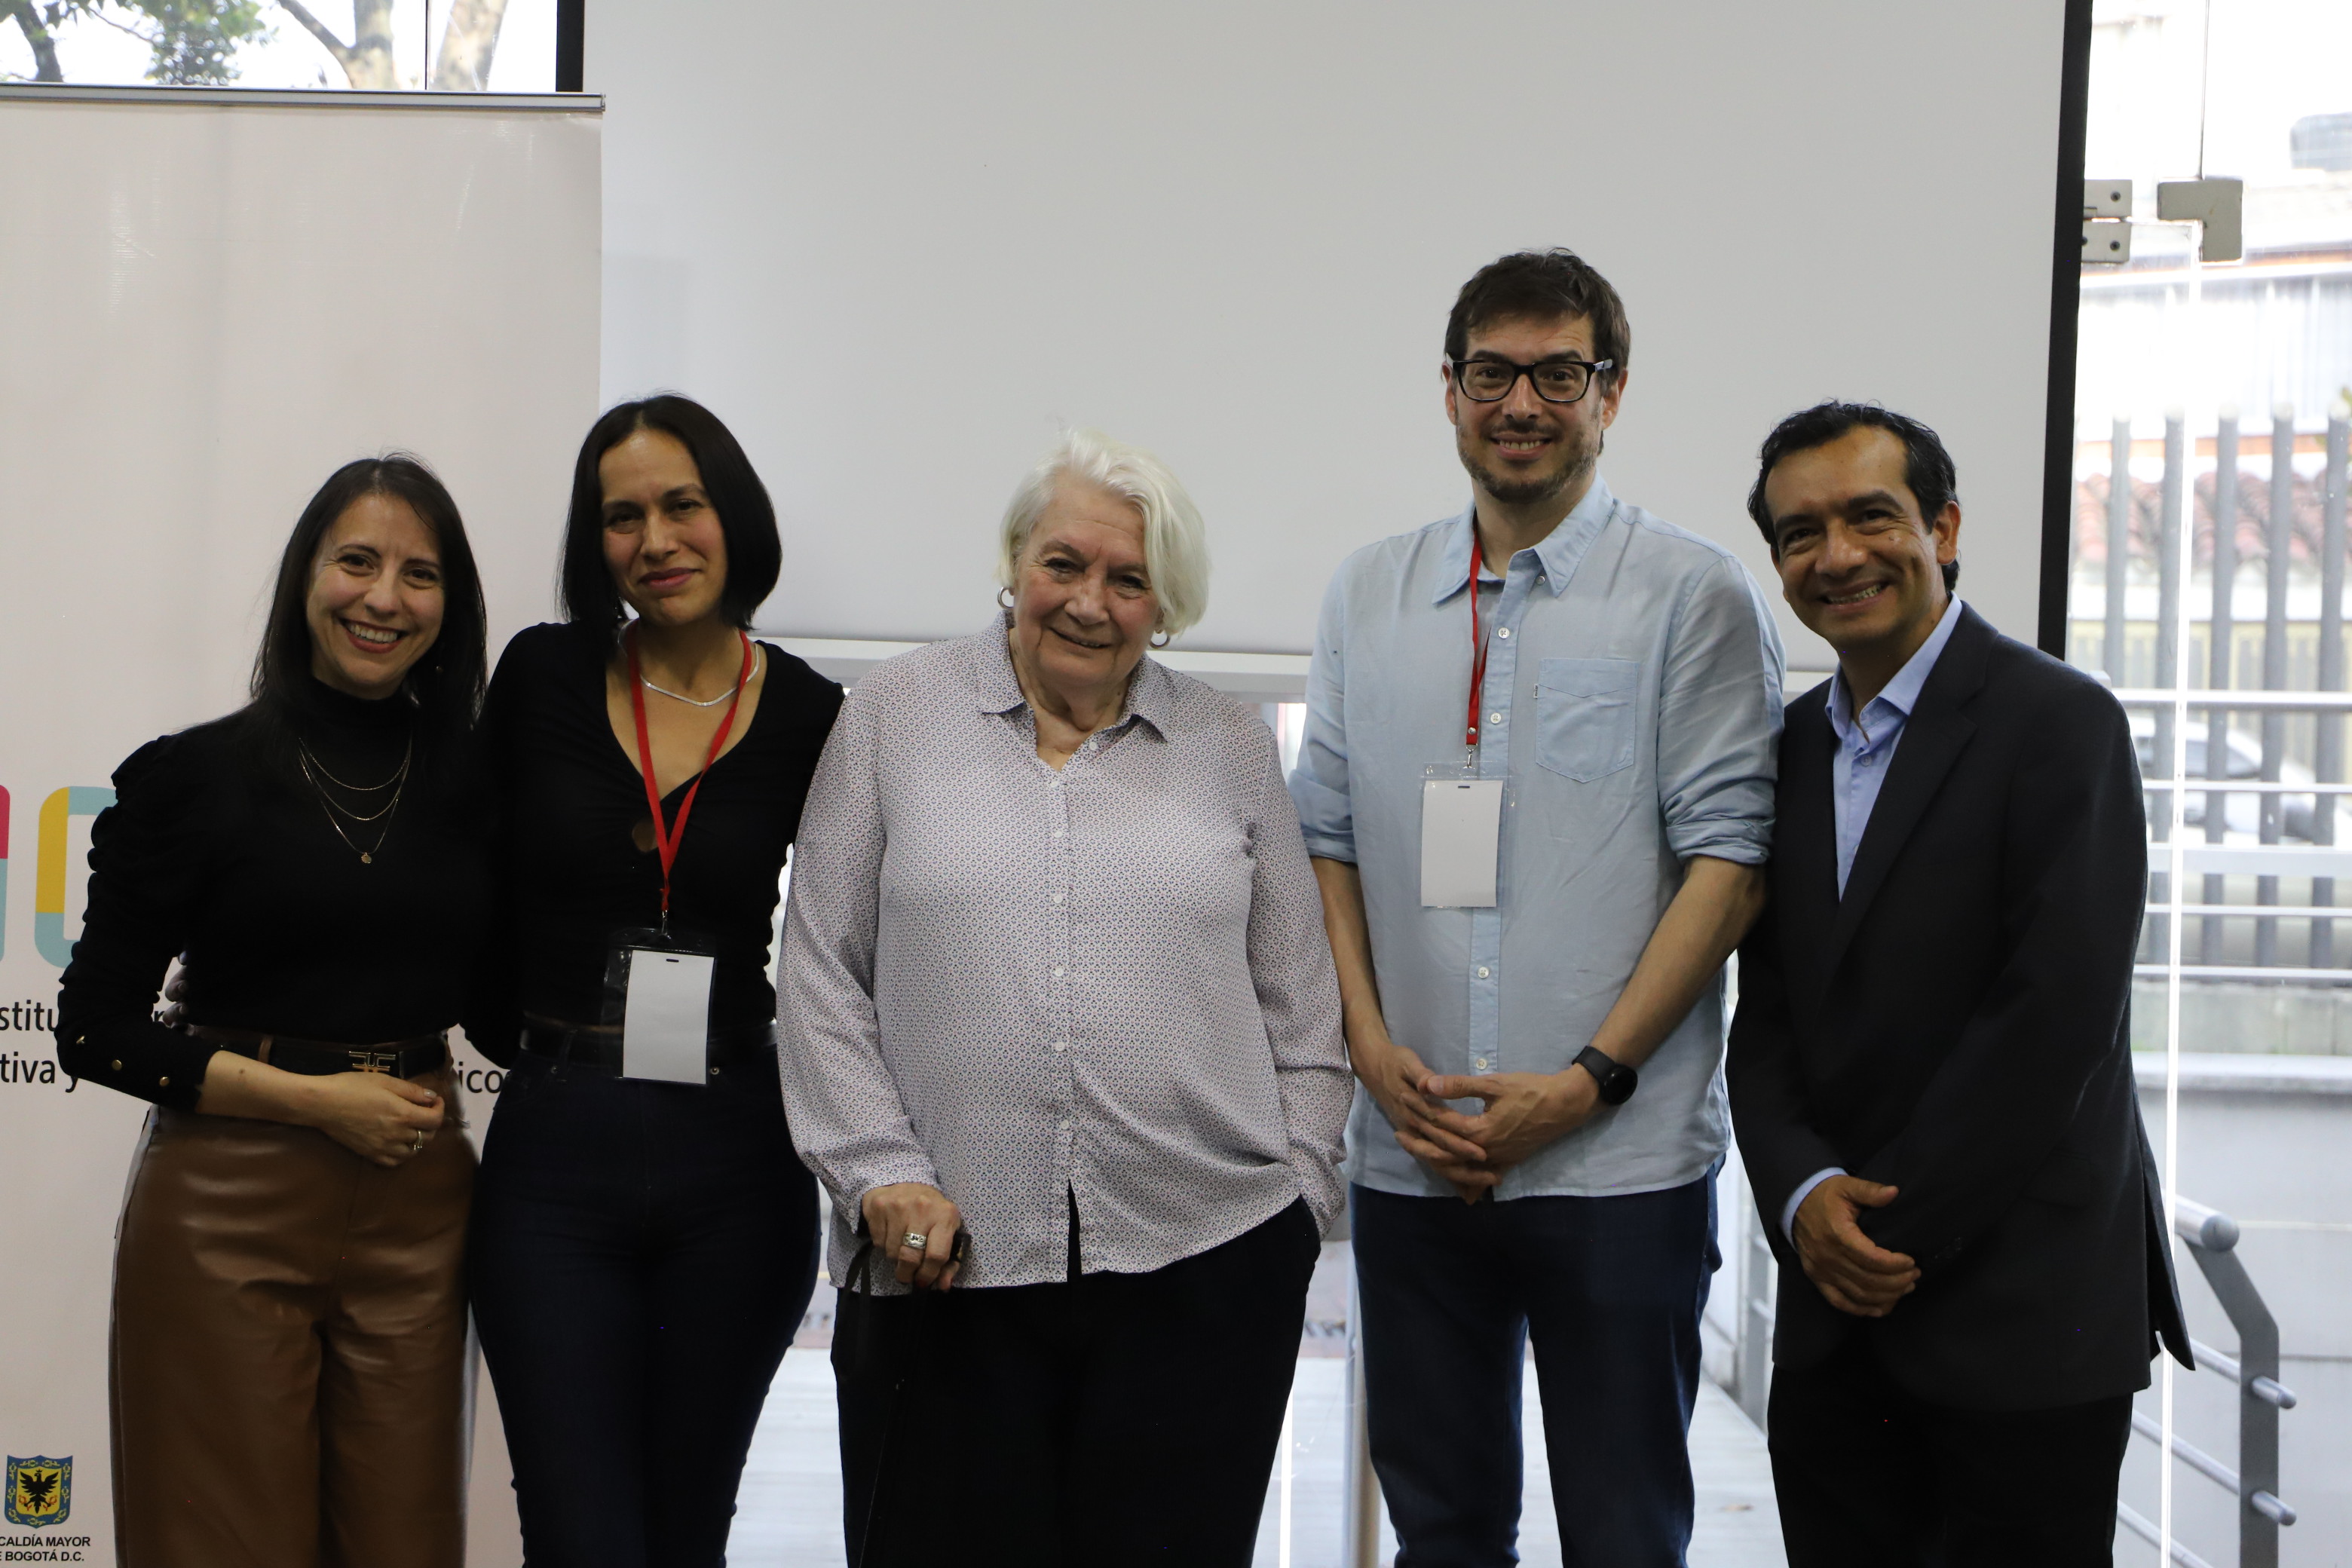 Foto de Jorge Verdugo, Eliana Figueroa junto a ponentes internacionales